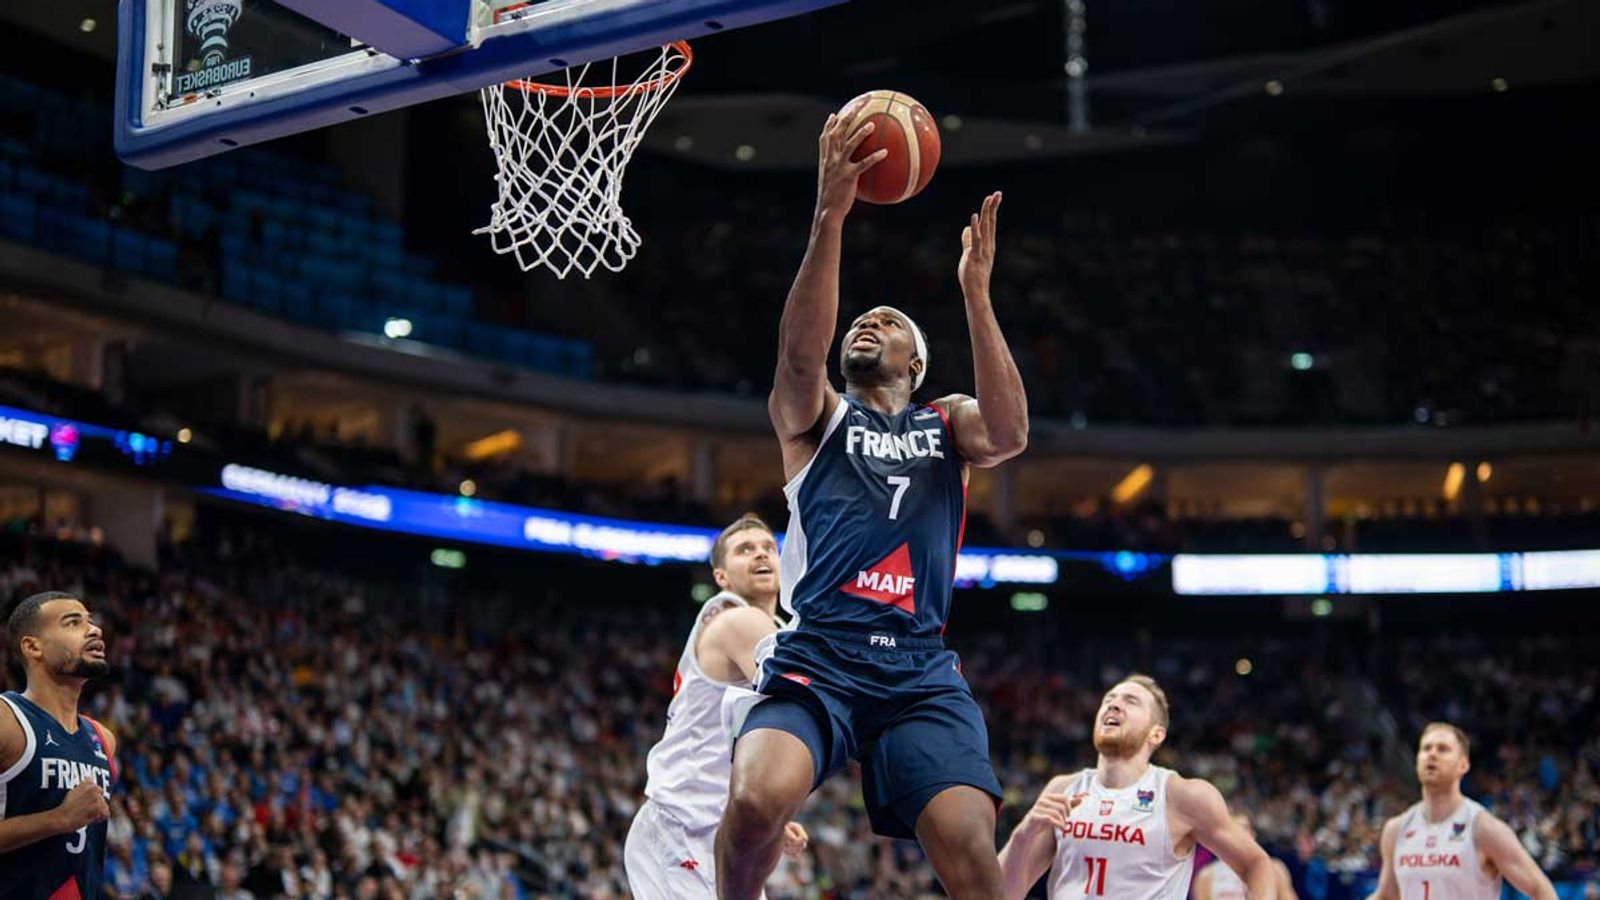 Championnat d’Europe de basket : la France remporte la demi-finale face à la Pologne |  nouvelles de basket-ball